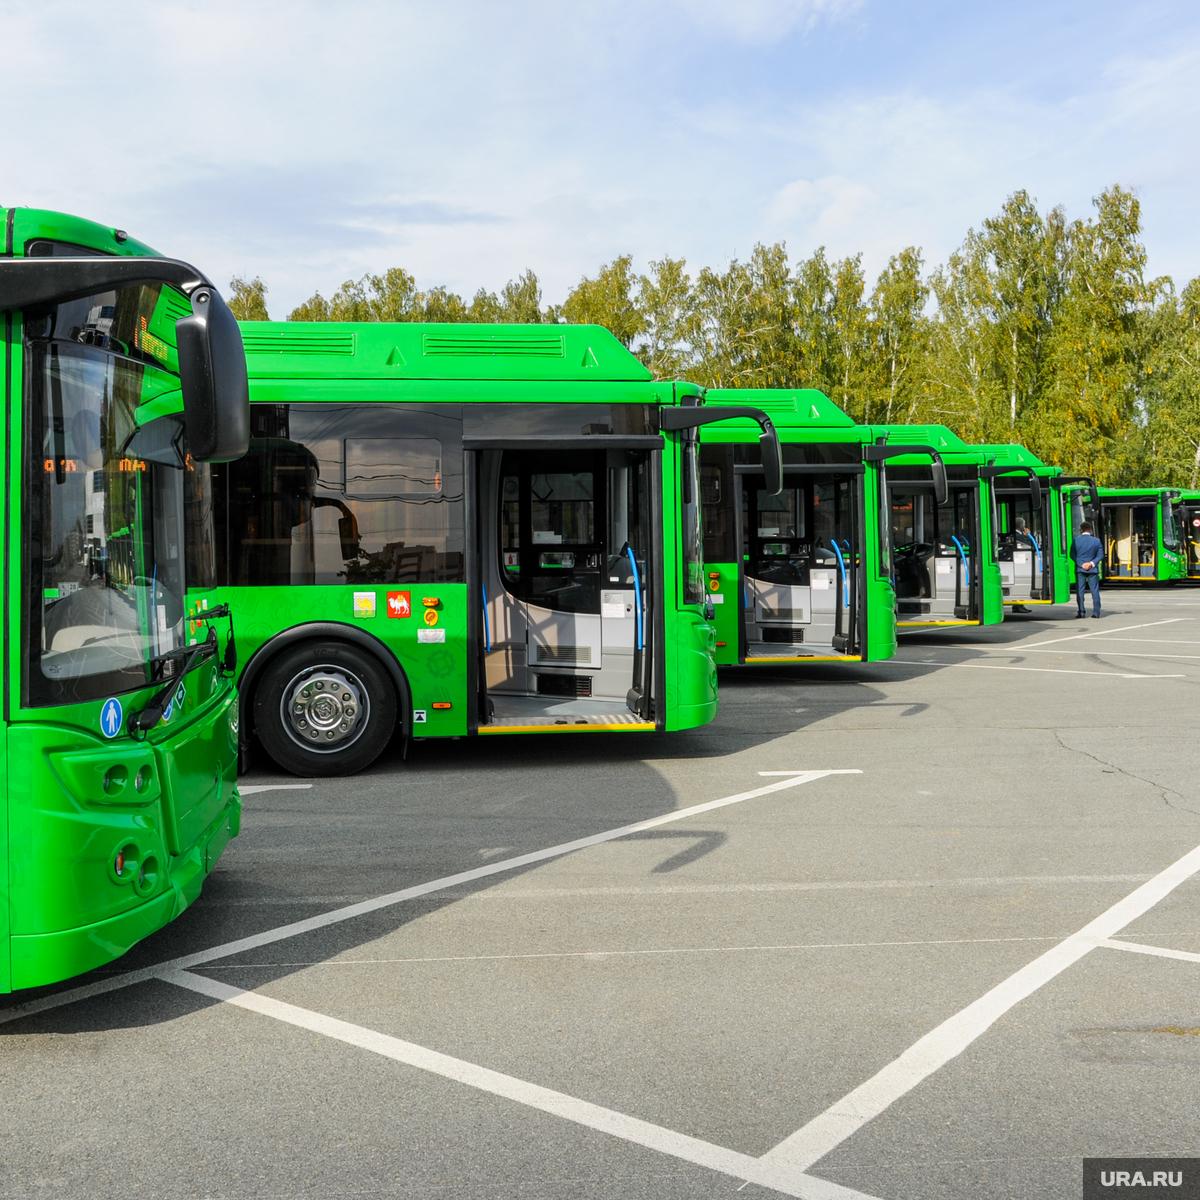 Расписание автобусов, которые будут ходить до железнодорожной станции «Добруш» в Дни белорусской письменности 3-4 сентября